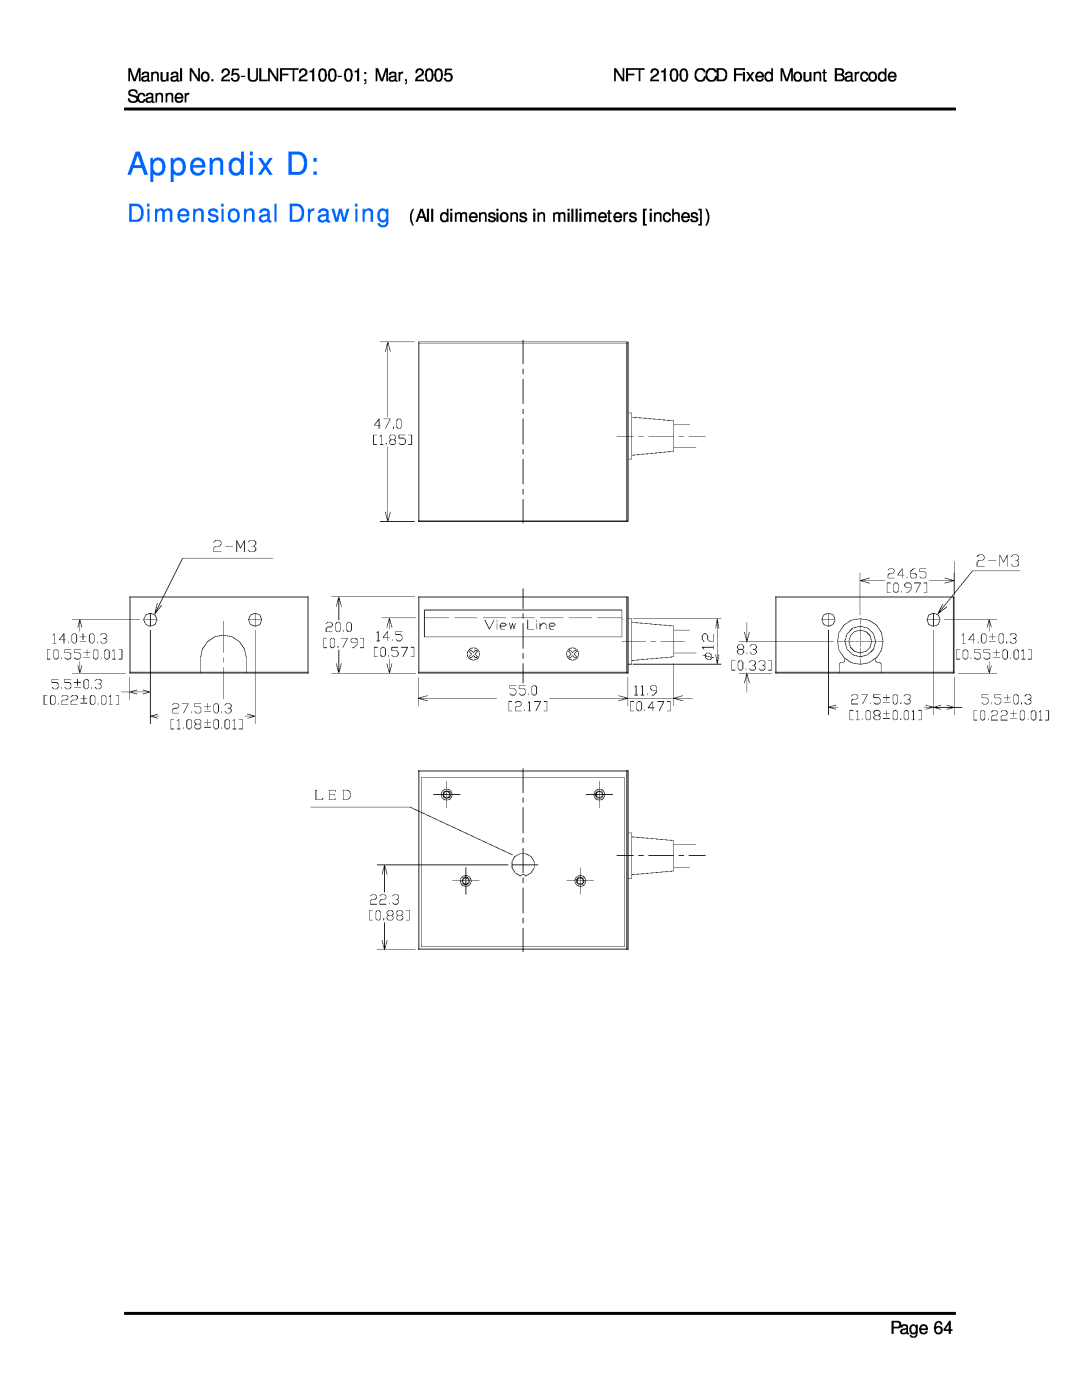 Opticon manual Appendix D, Manual No. 25-ULNFT2100-01 Mar, NFT 2100 CCD Fixed Mount Barcode, Scanner 